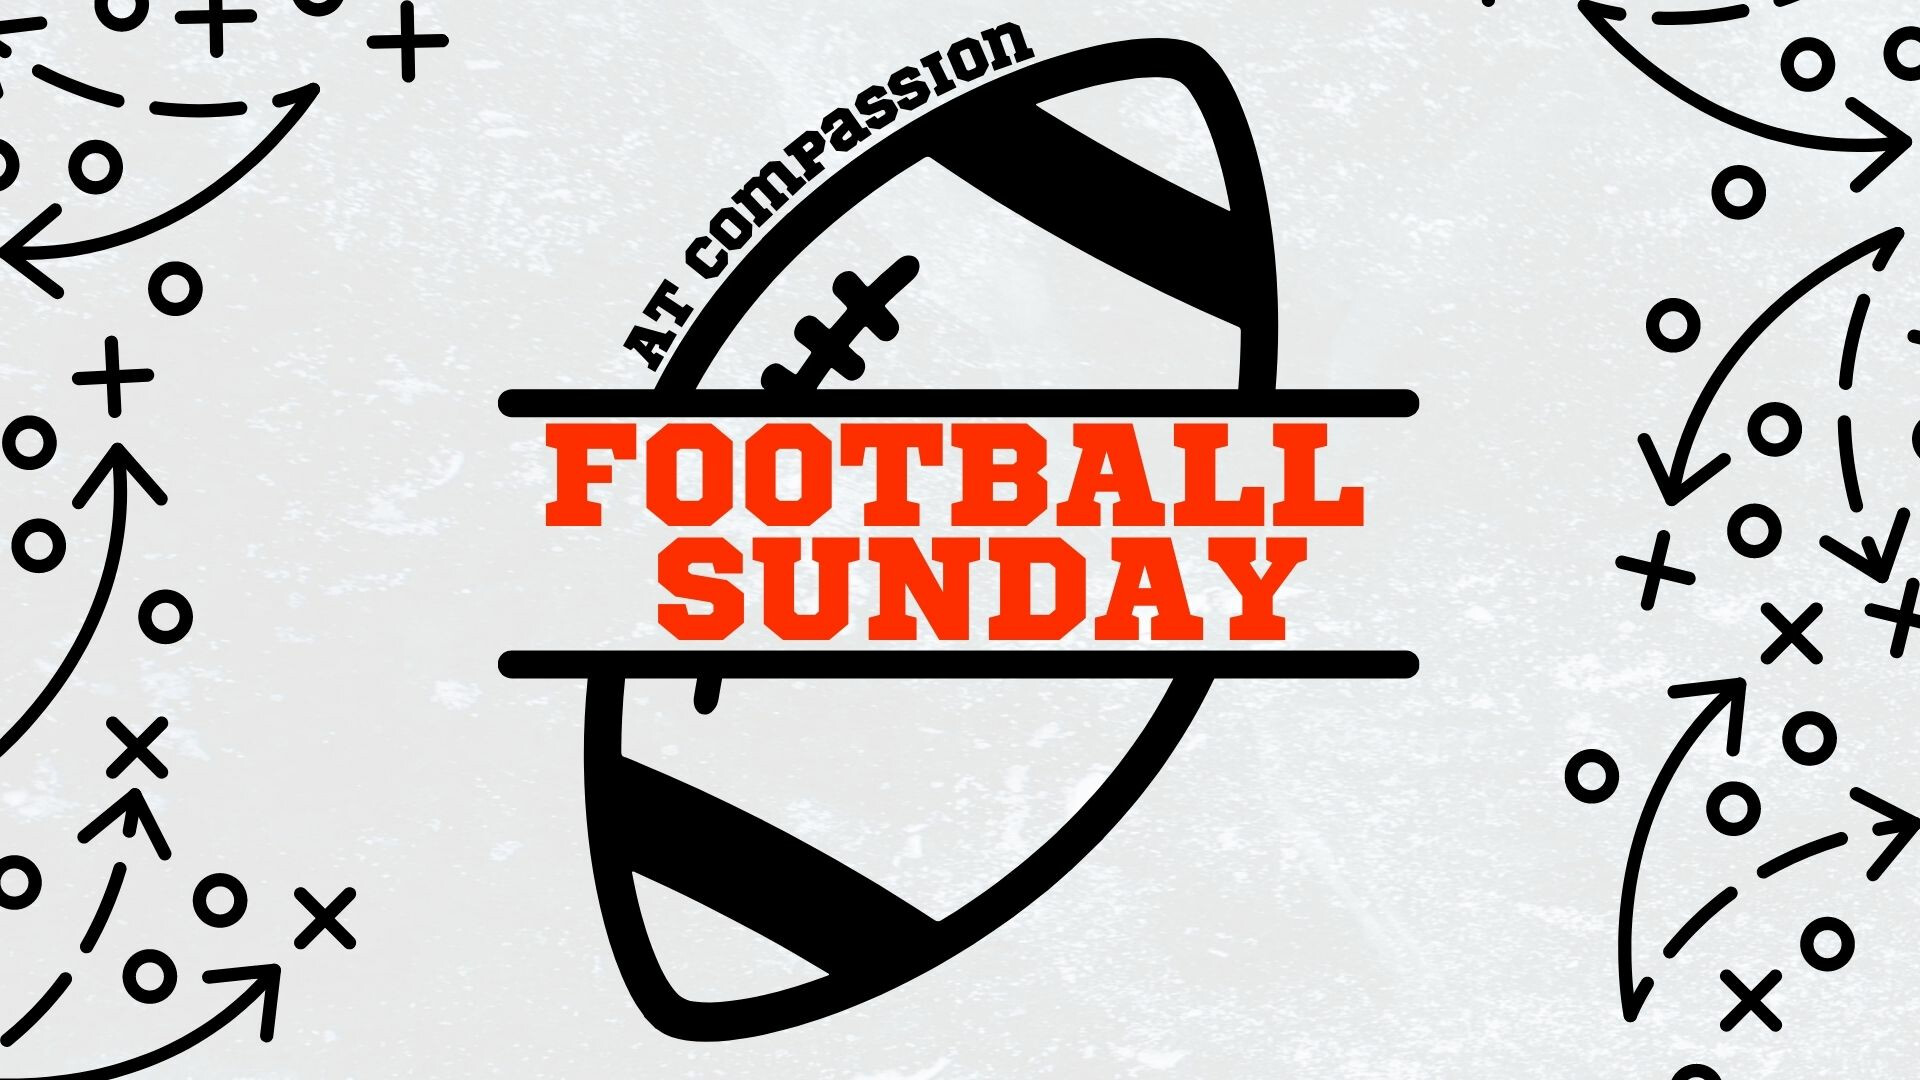 Football Sunday Sermon